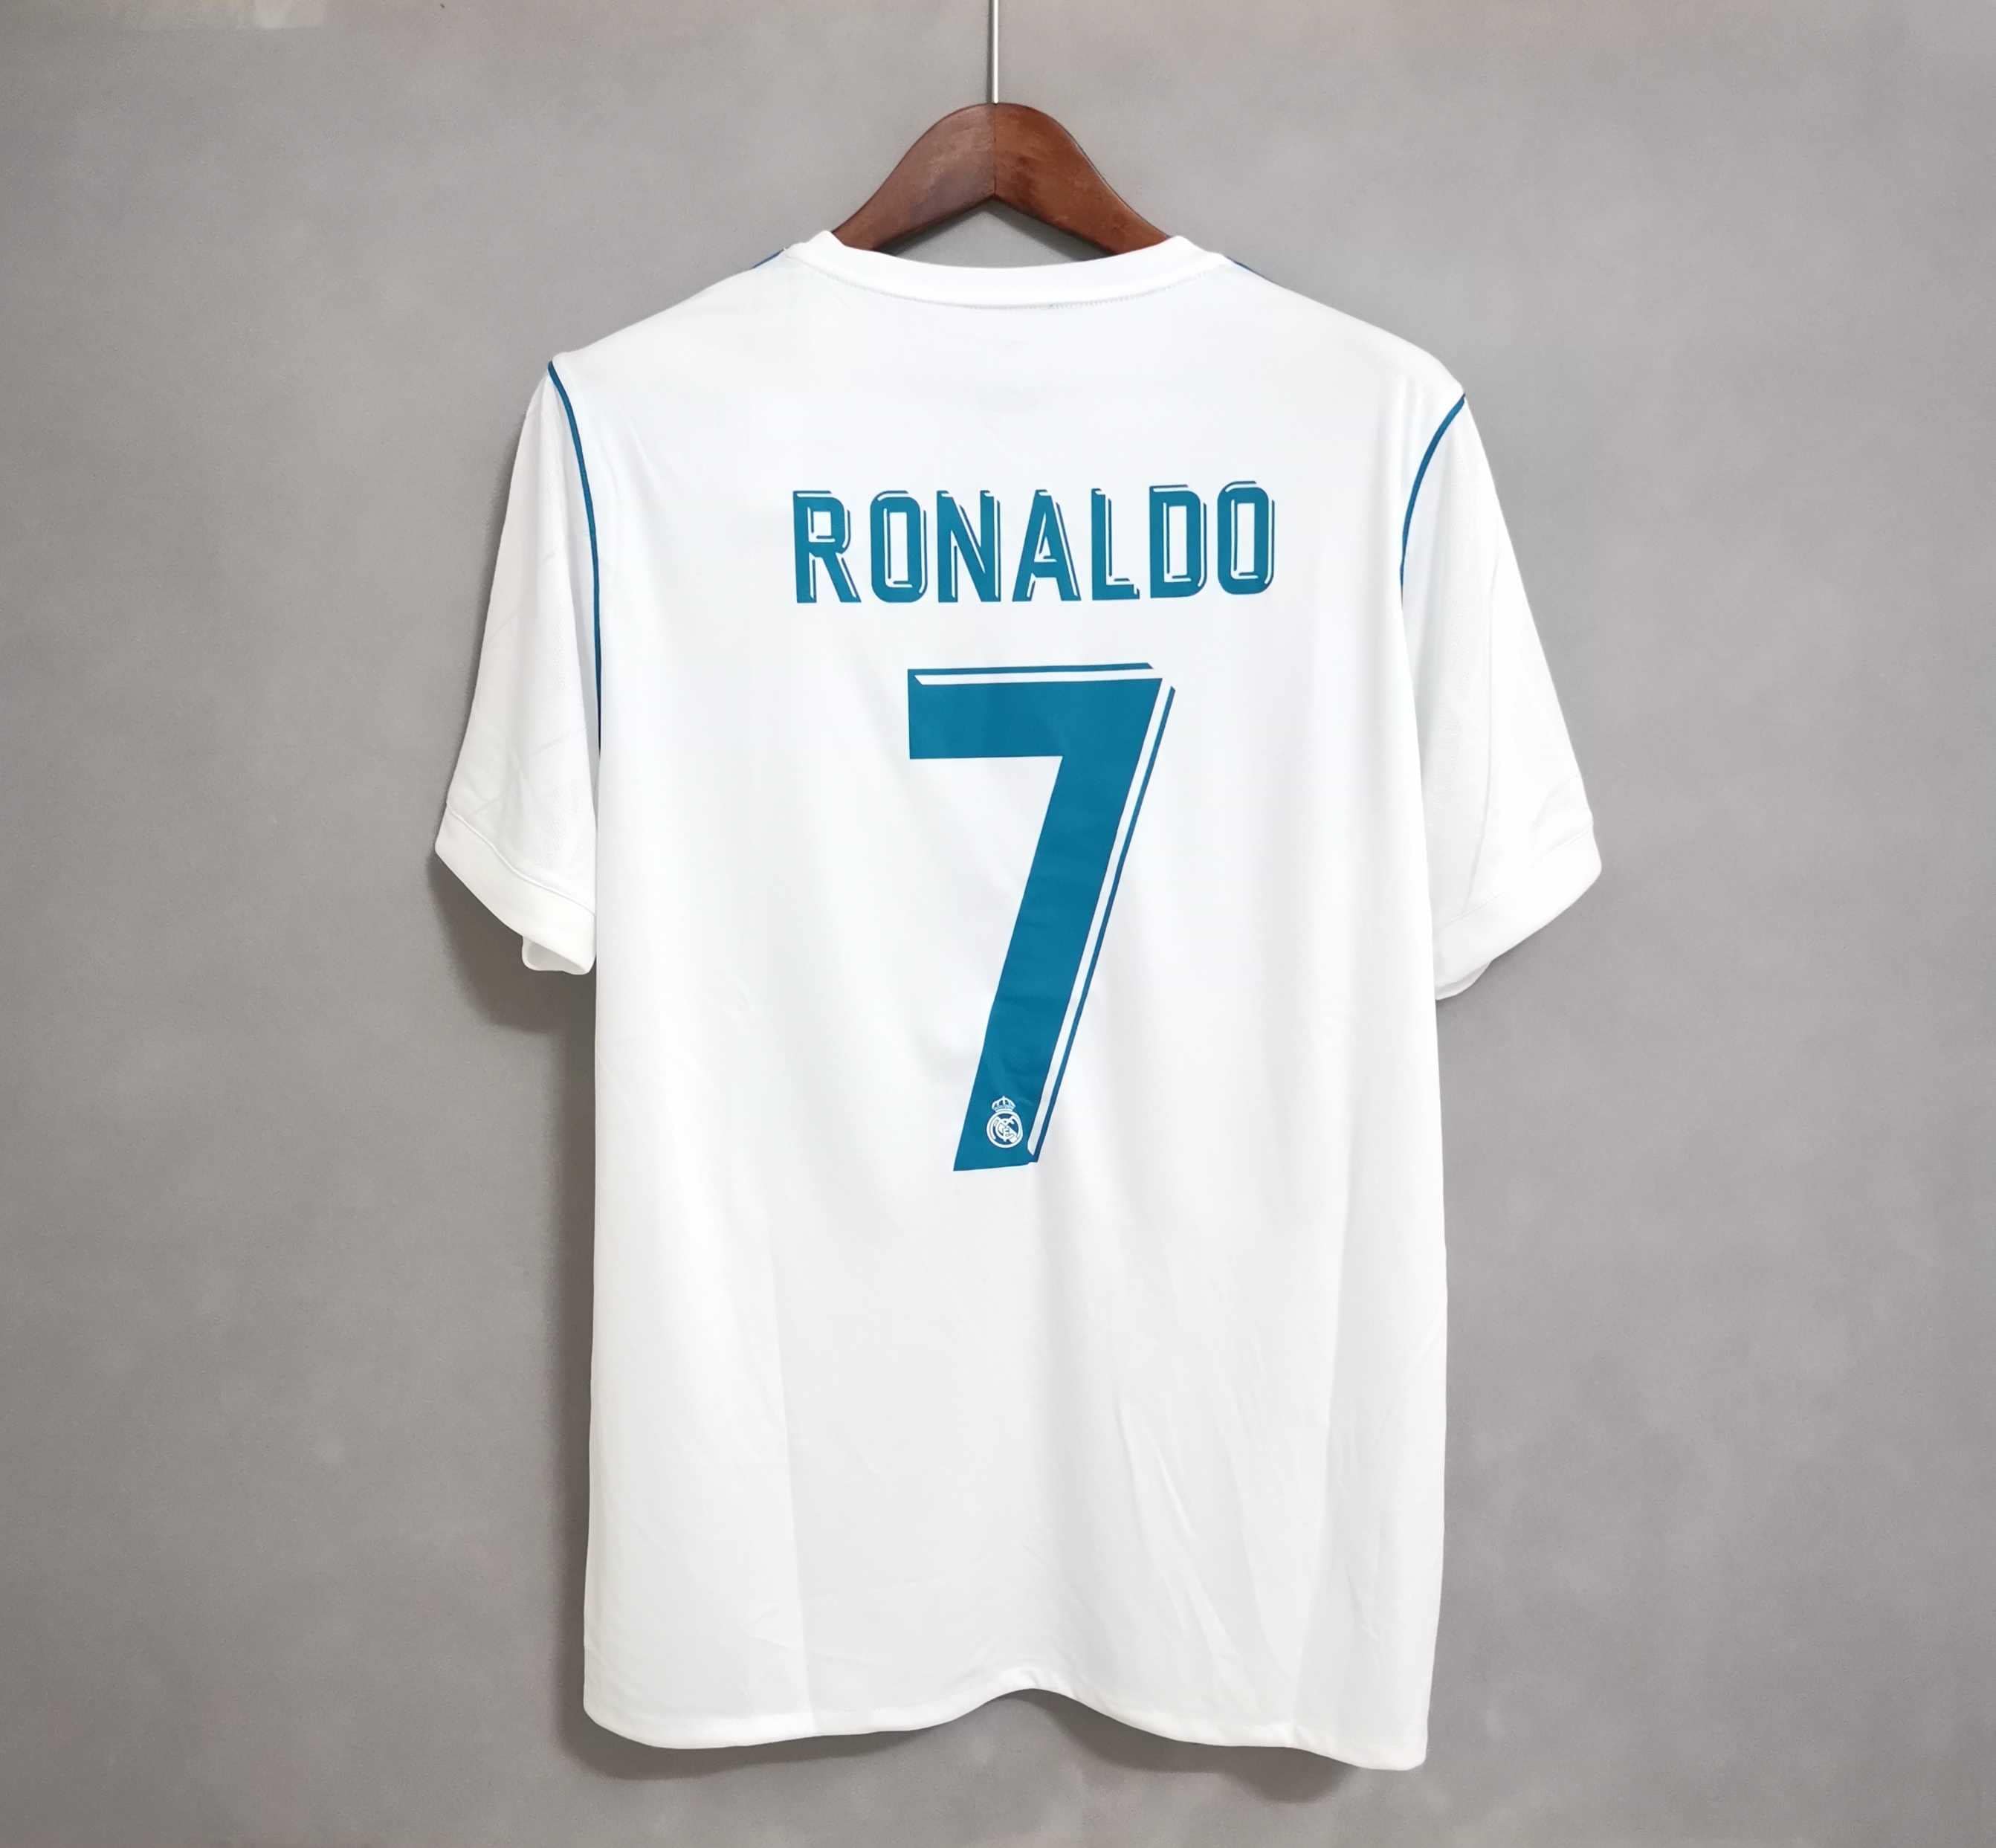 Real Madrid Ronaldo - Etsy Kong